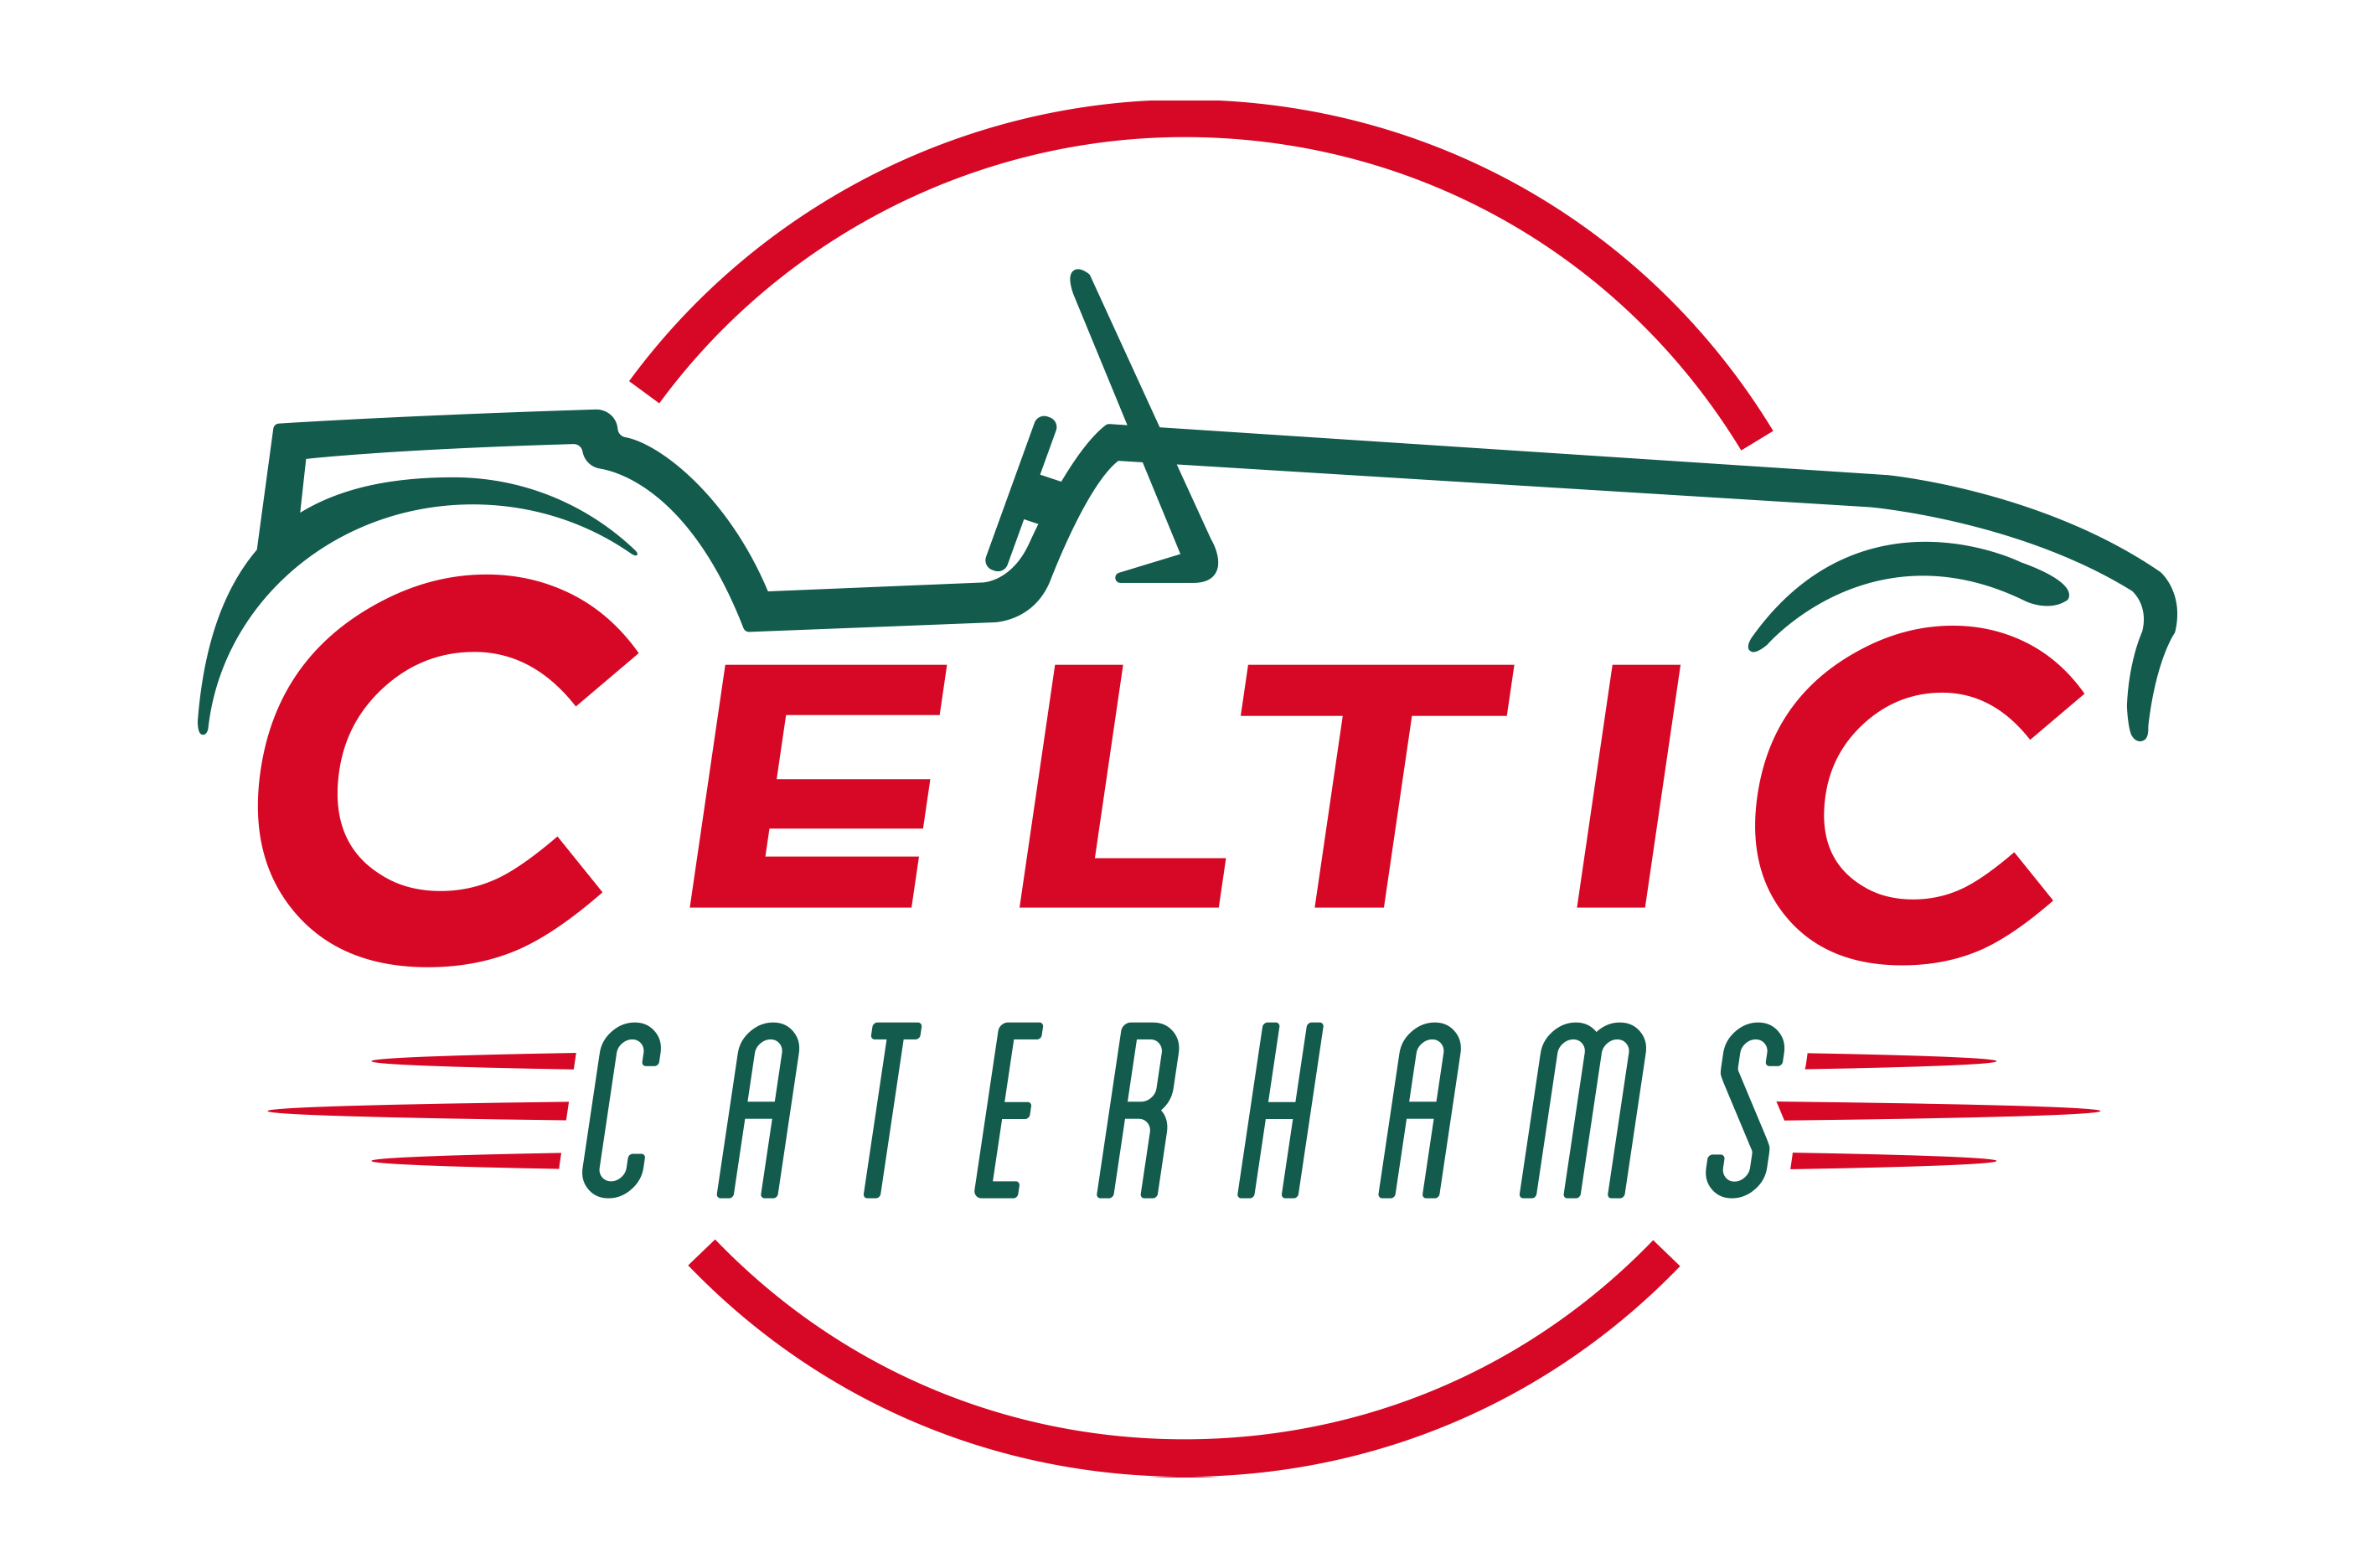 Celtic-Caterhams-aspect-ratio-530-350